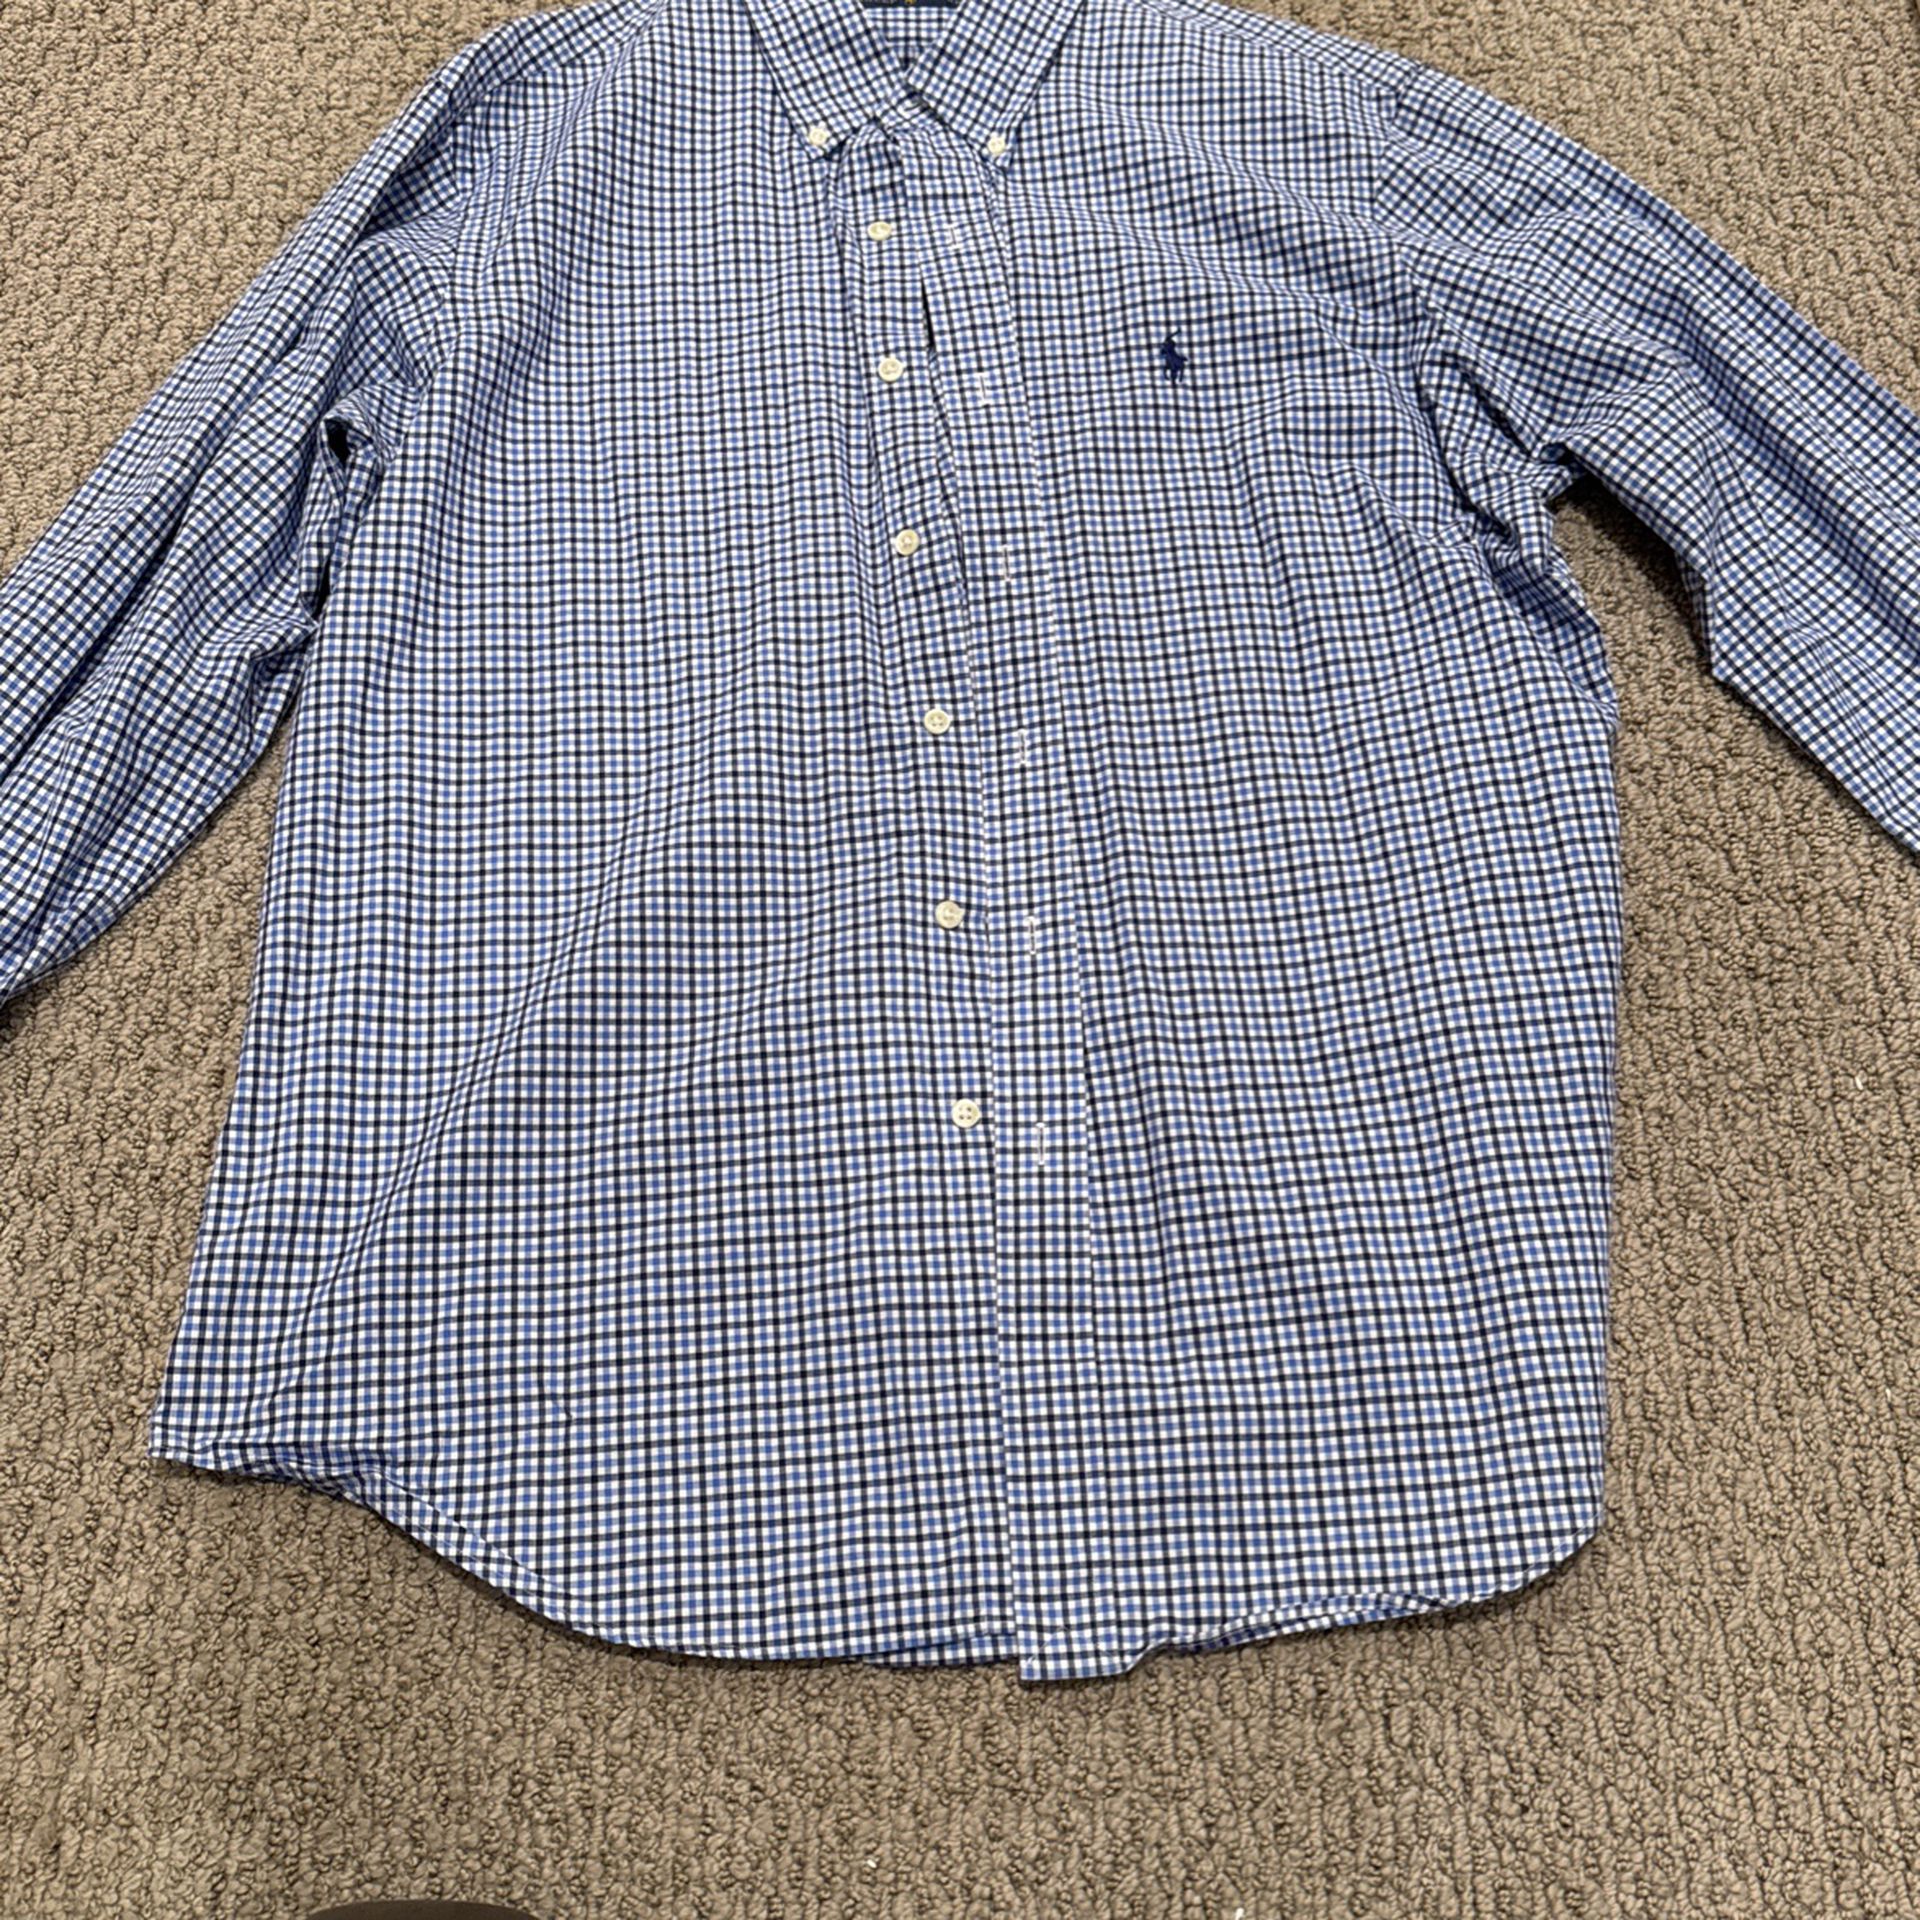 Polo Ralph Lauren Dress Shirt Size (L)